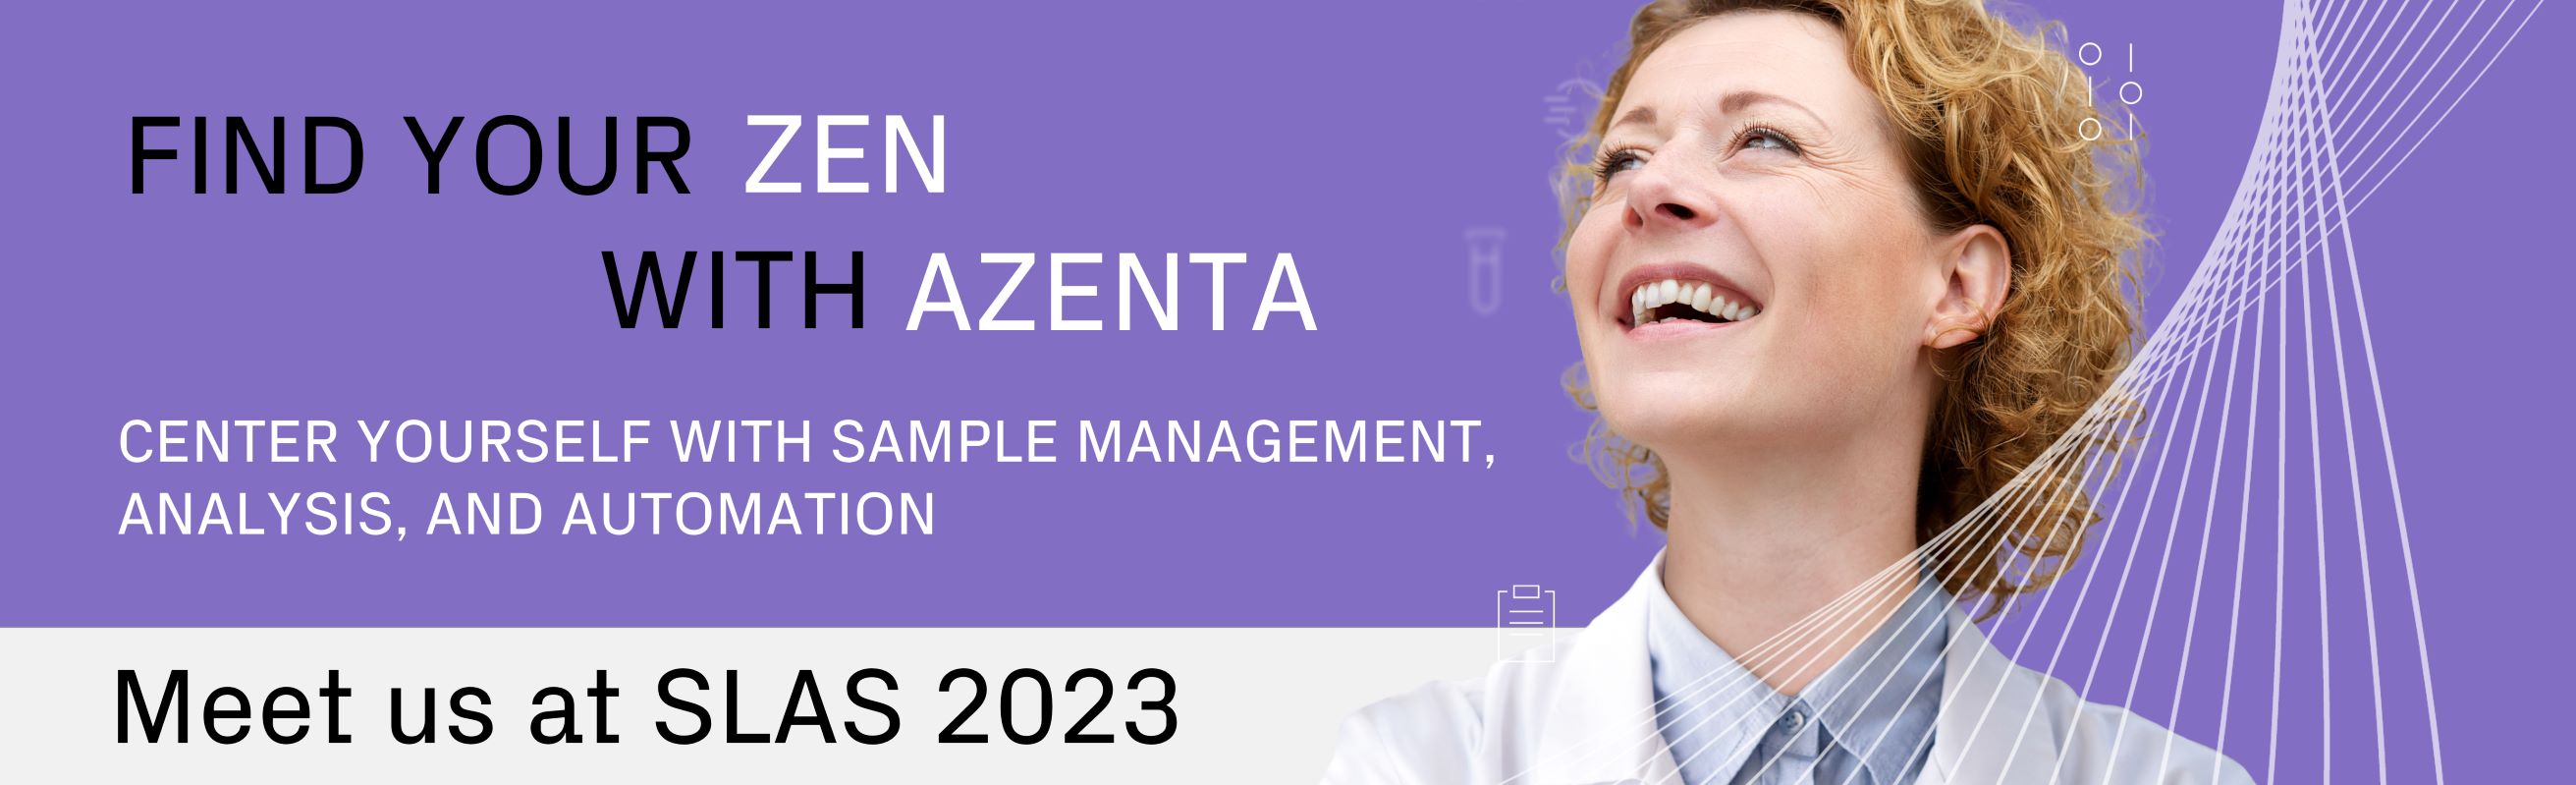 find your zen with Azenta meet us at SLAS 2023